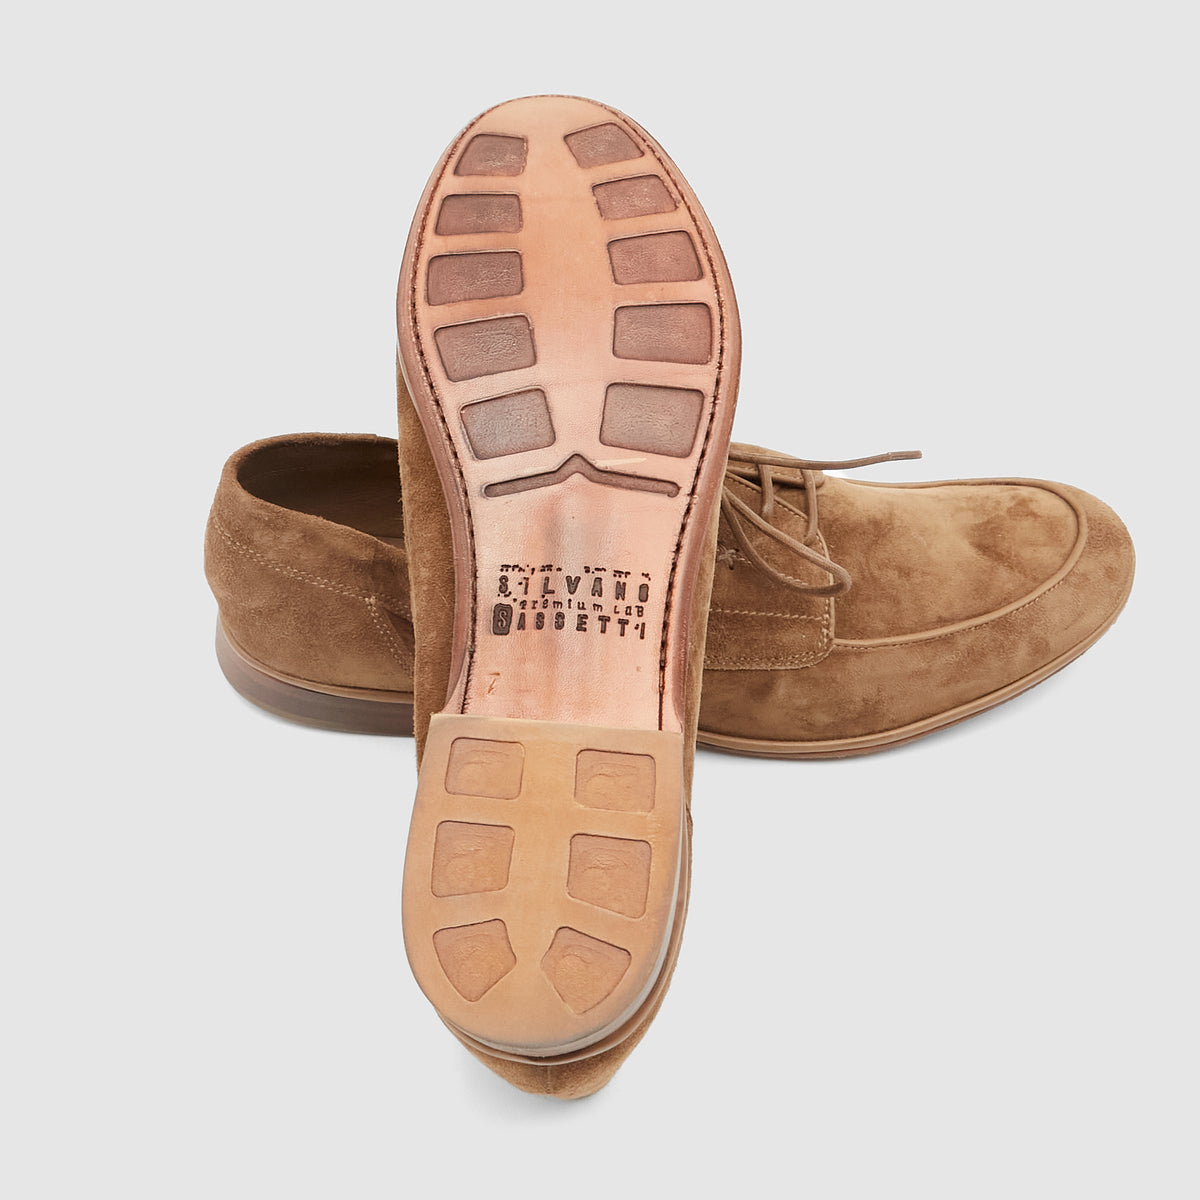 Silvano Sassetti Leather Moc- Toe Leather Shoes